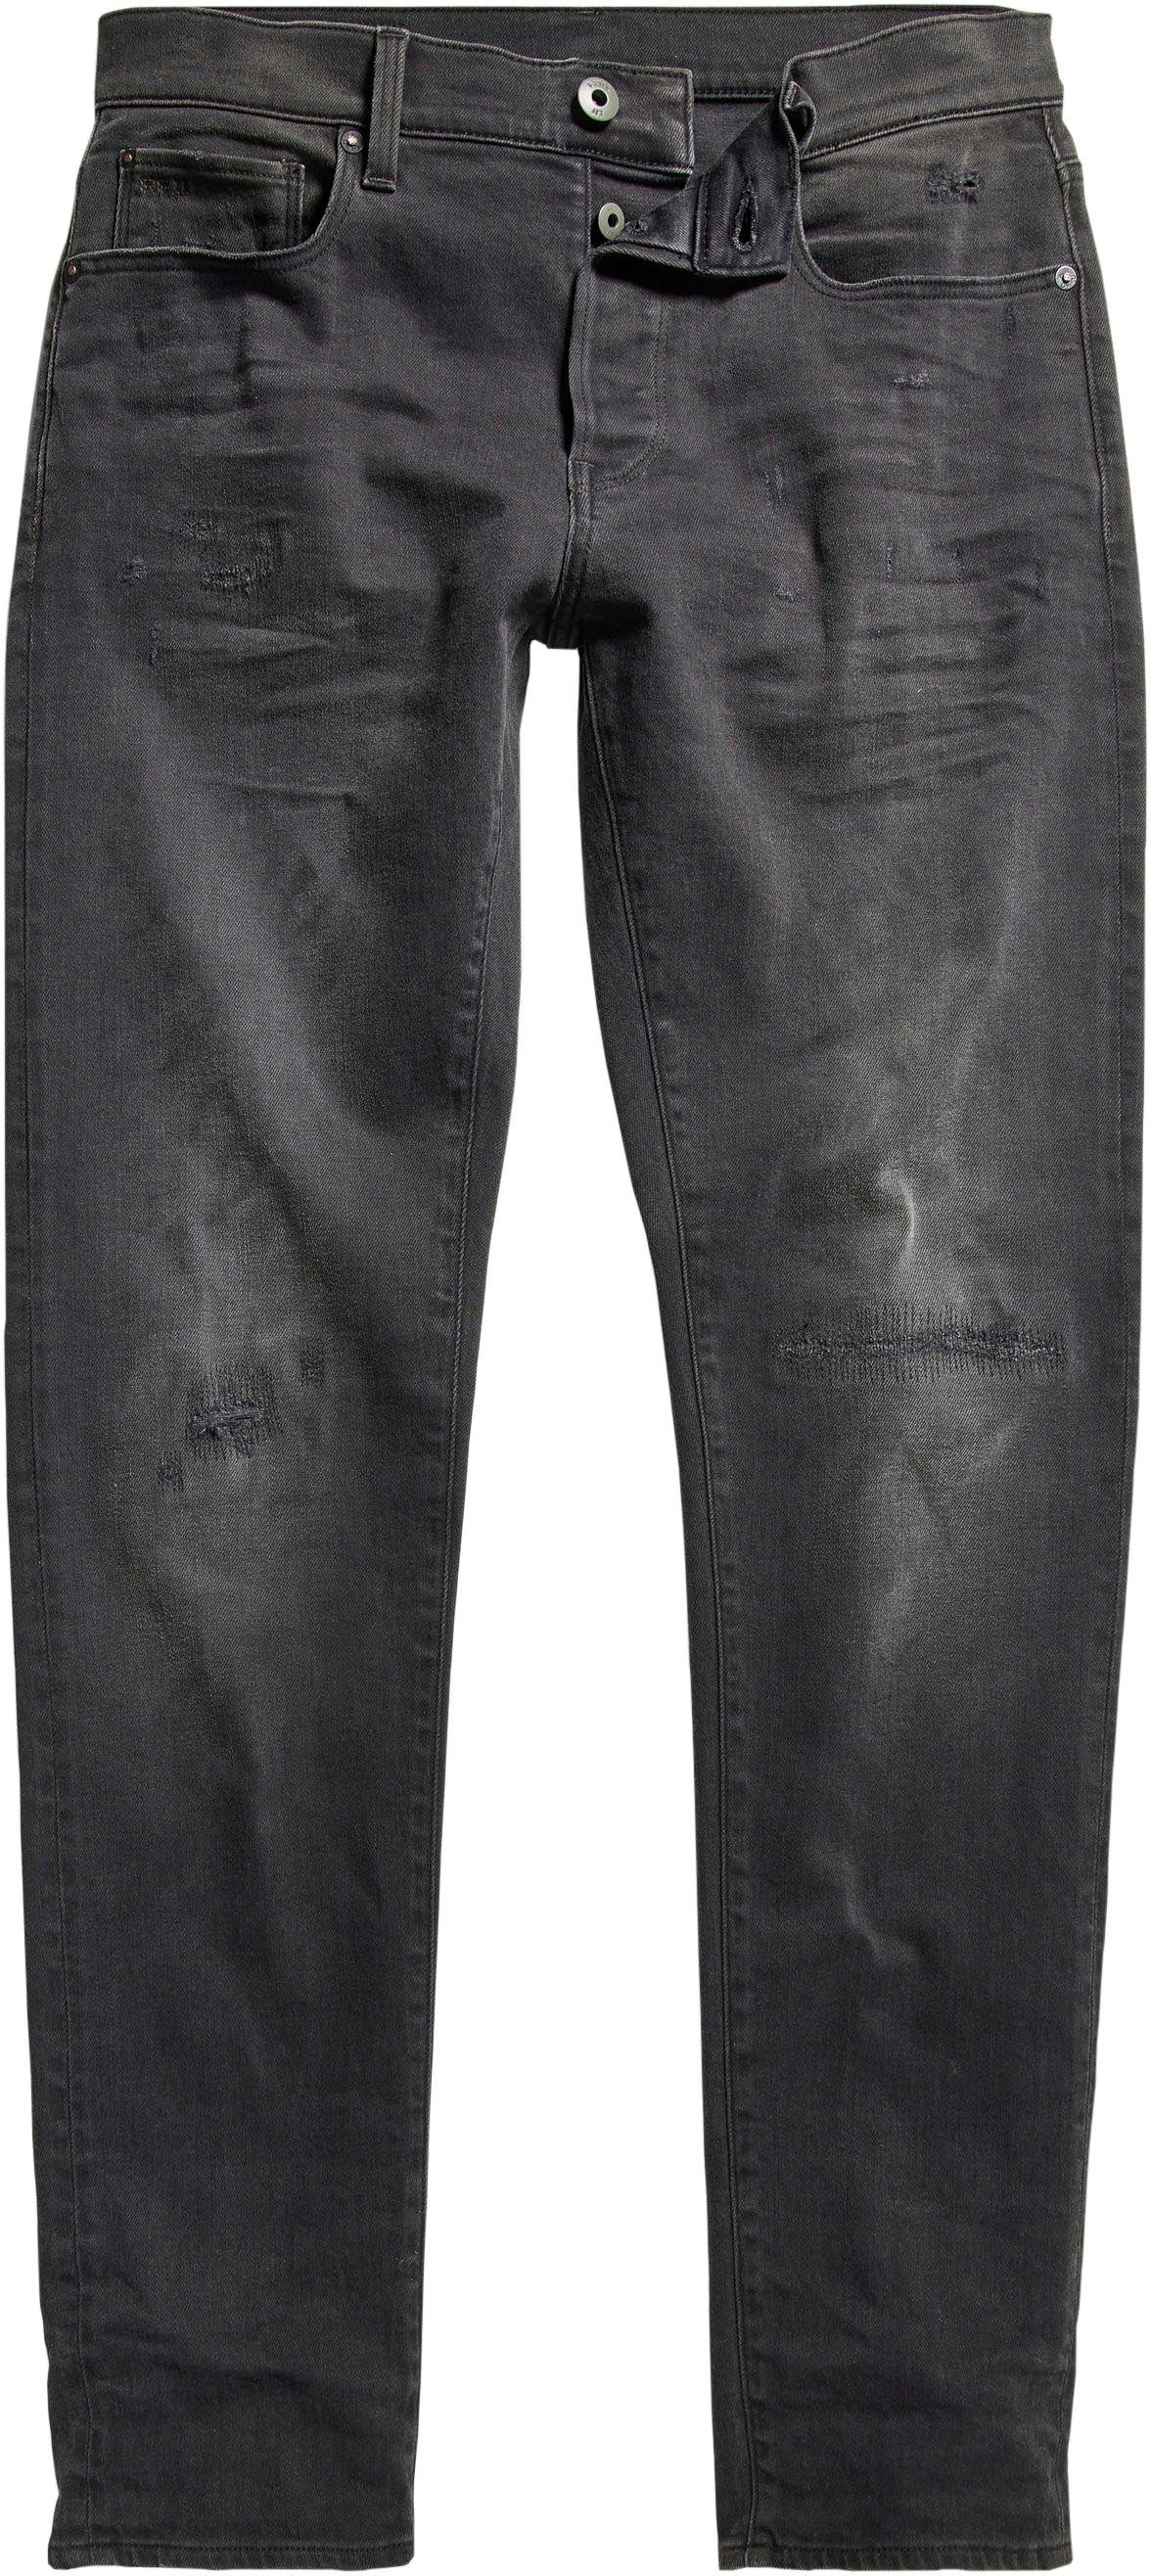 blackony Slim-fit-Jeans Slim G-Star RAW 3301